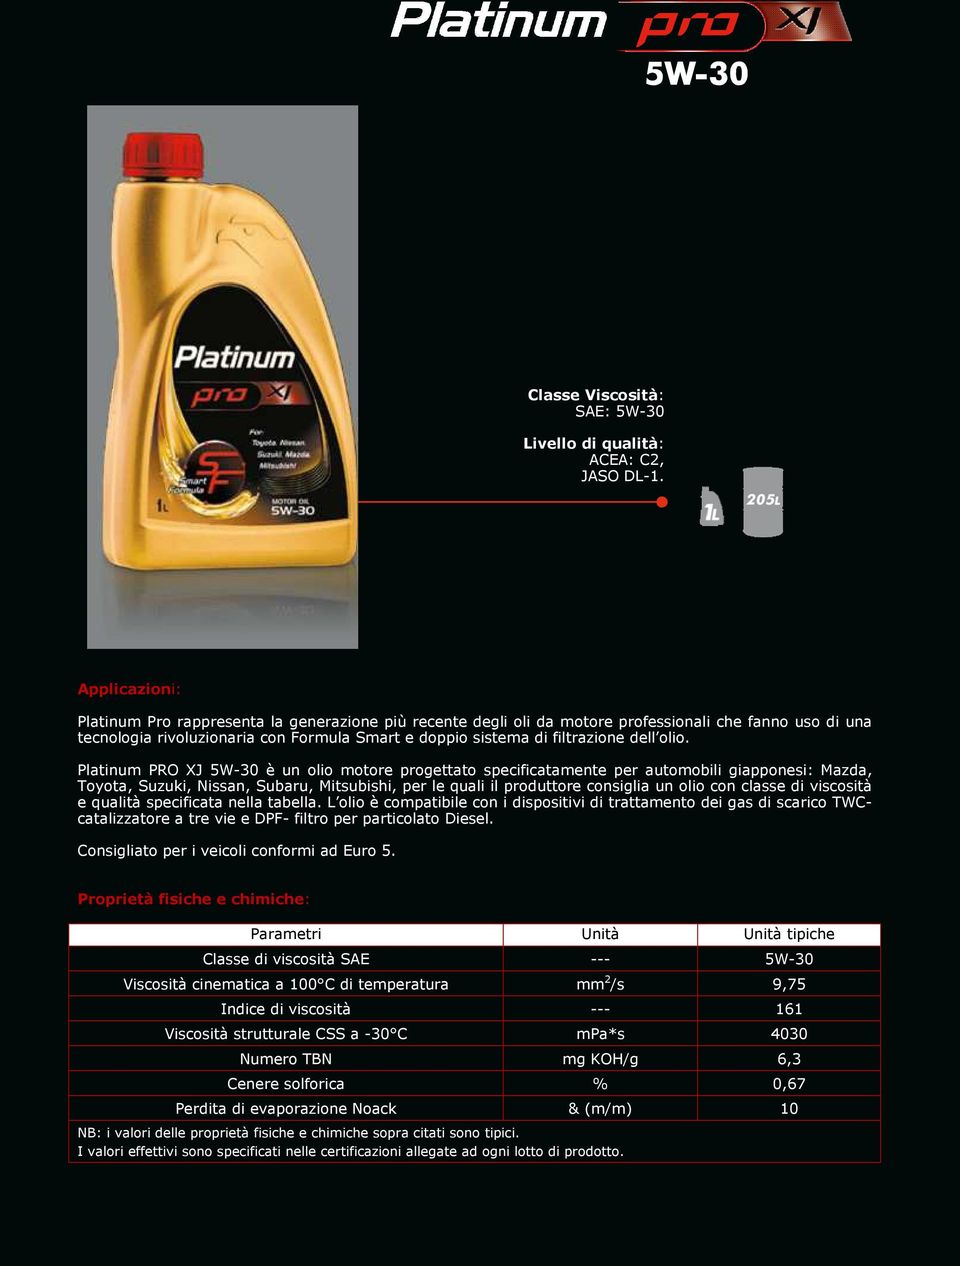 consiglia un olio con classe di viscosità e qualità specificata nella tabella.